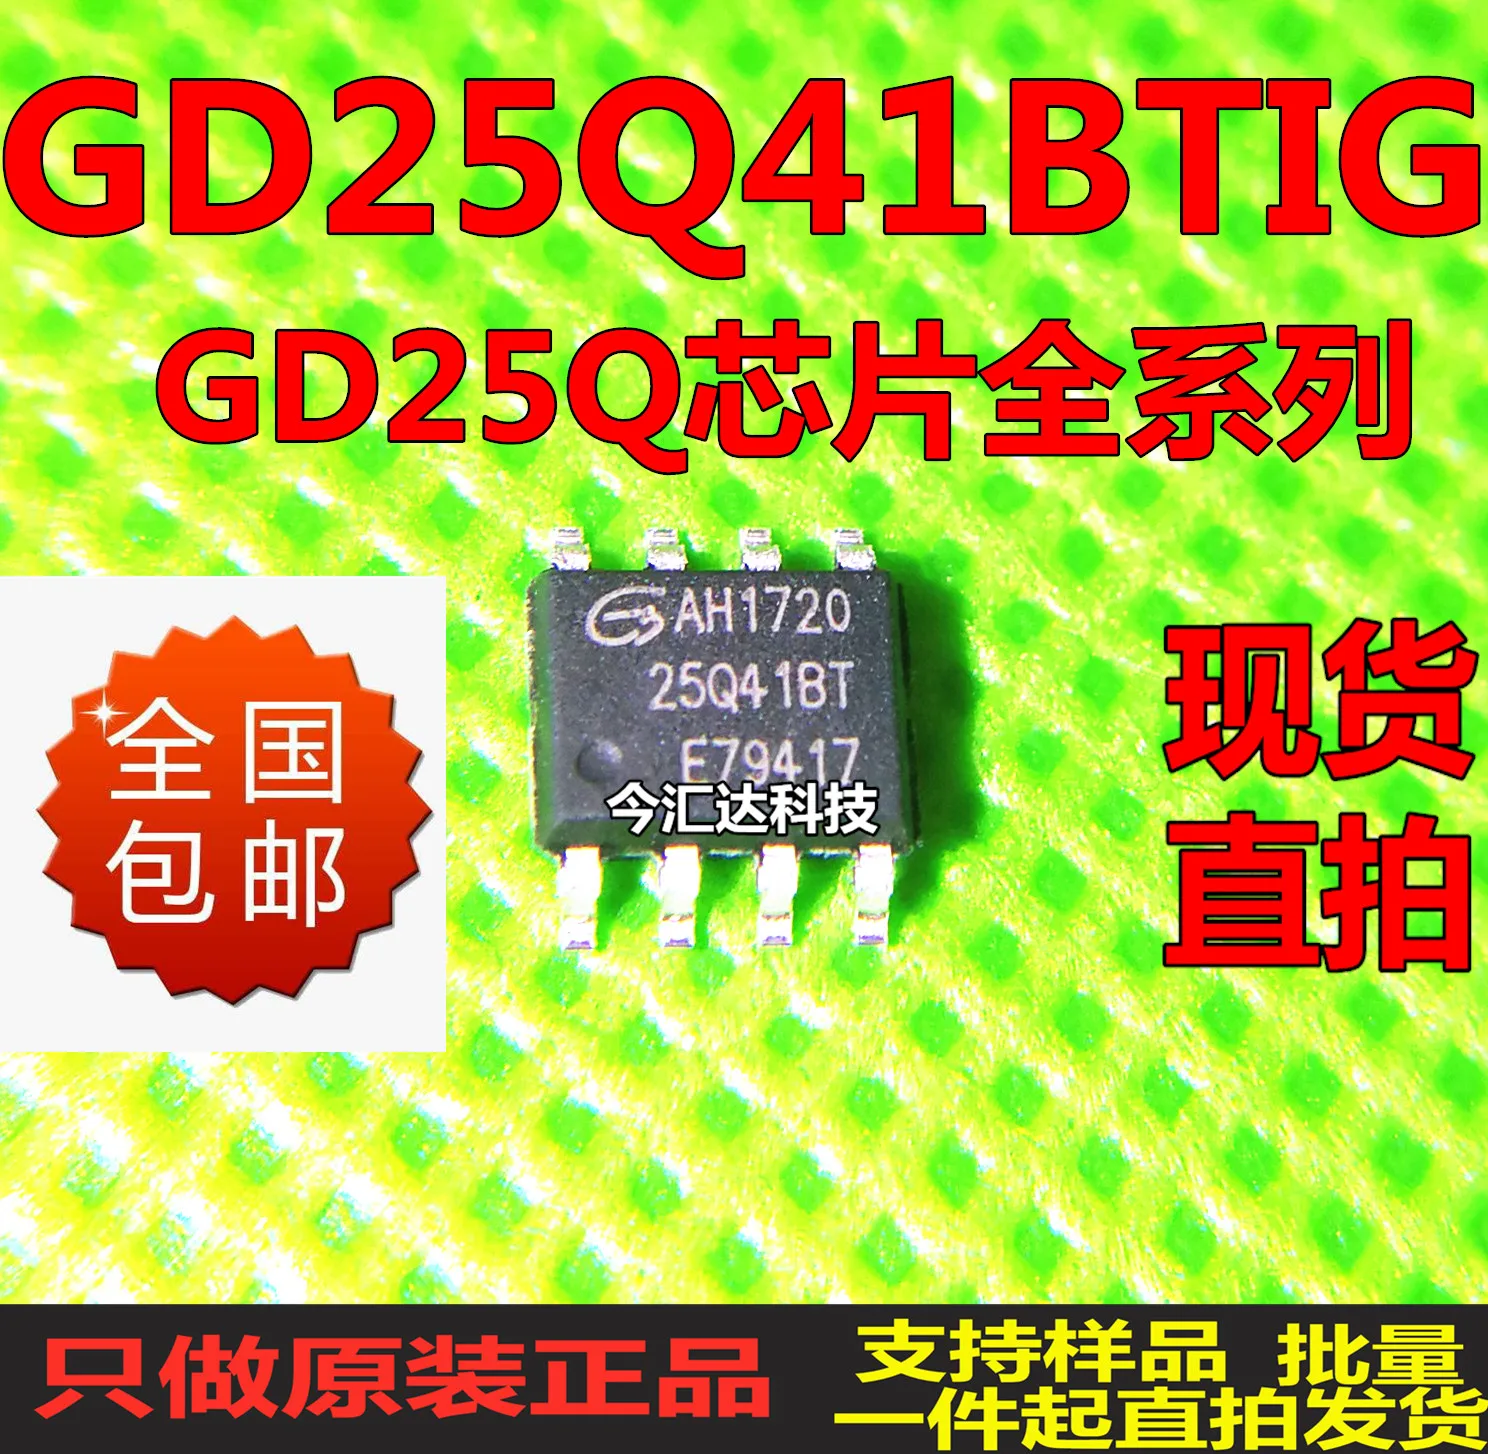 

30pcs original new 30pcs original new GD25Q41BTIGSOP8 screen printing 25Q41 512KB 4Mbit